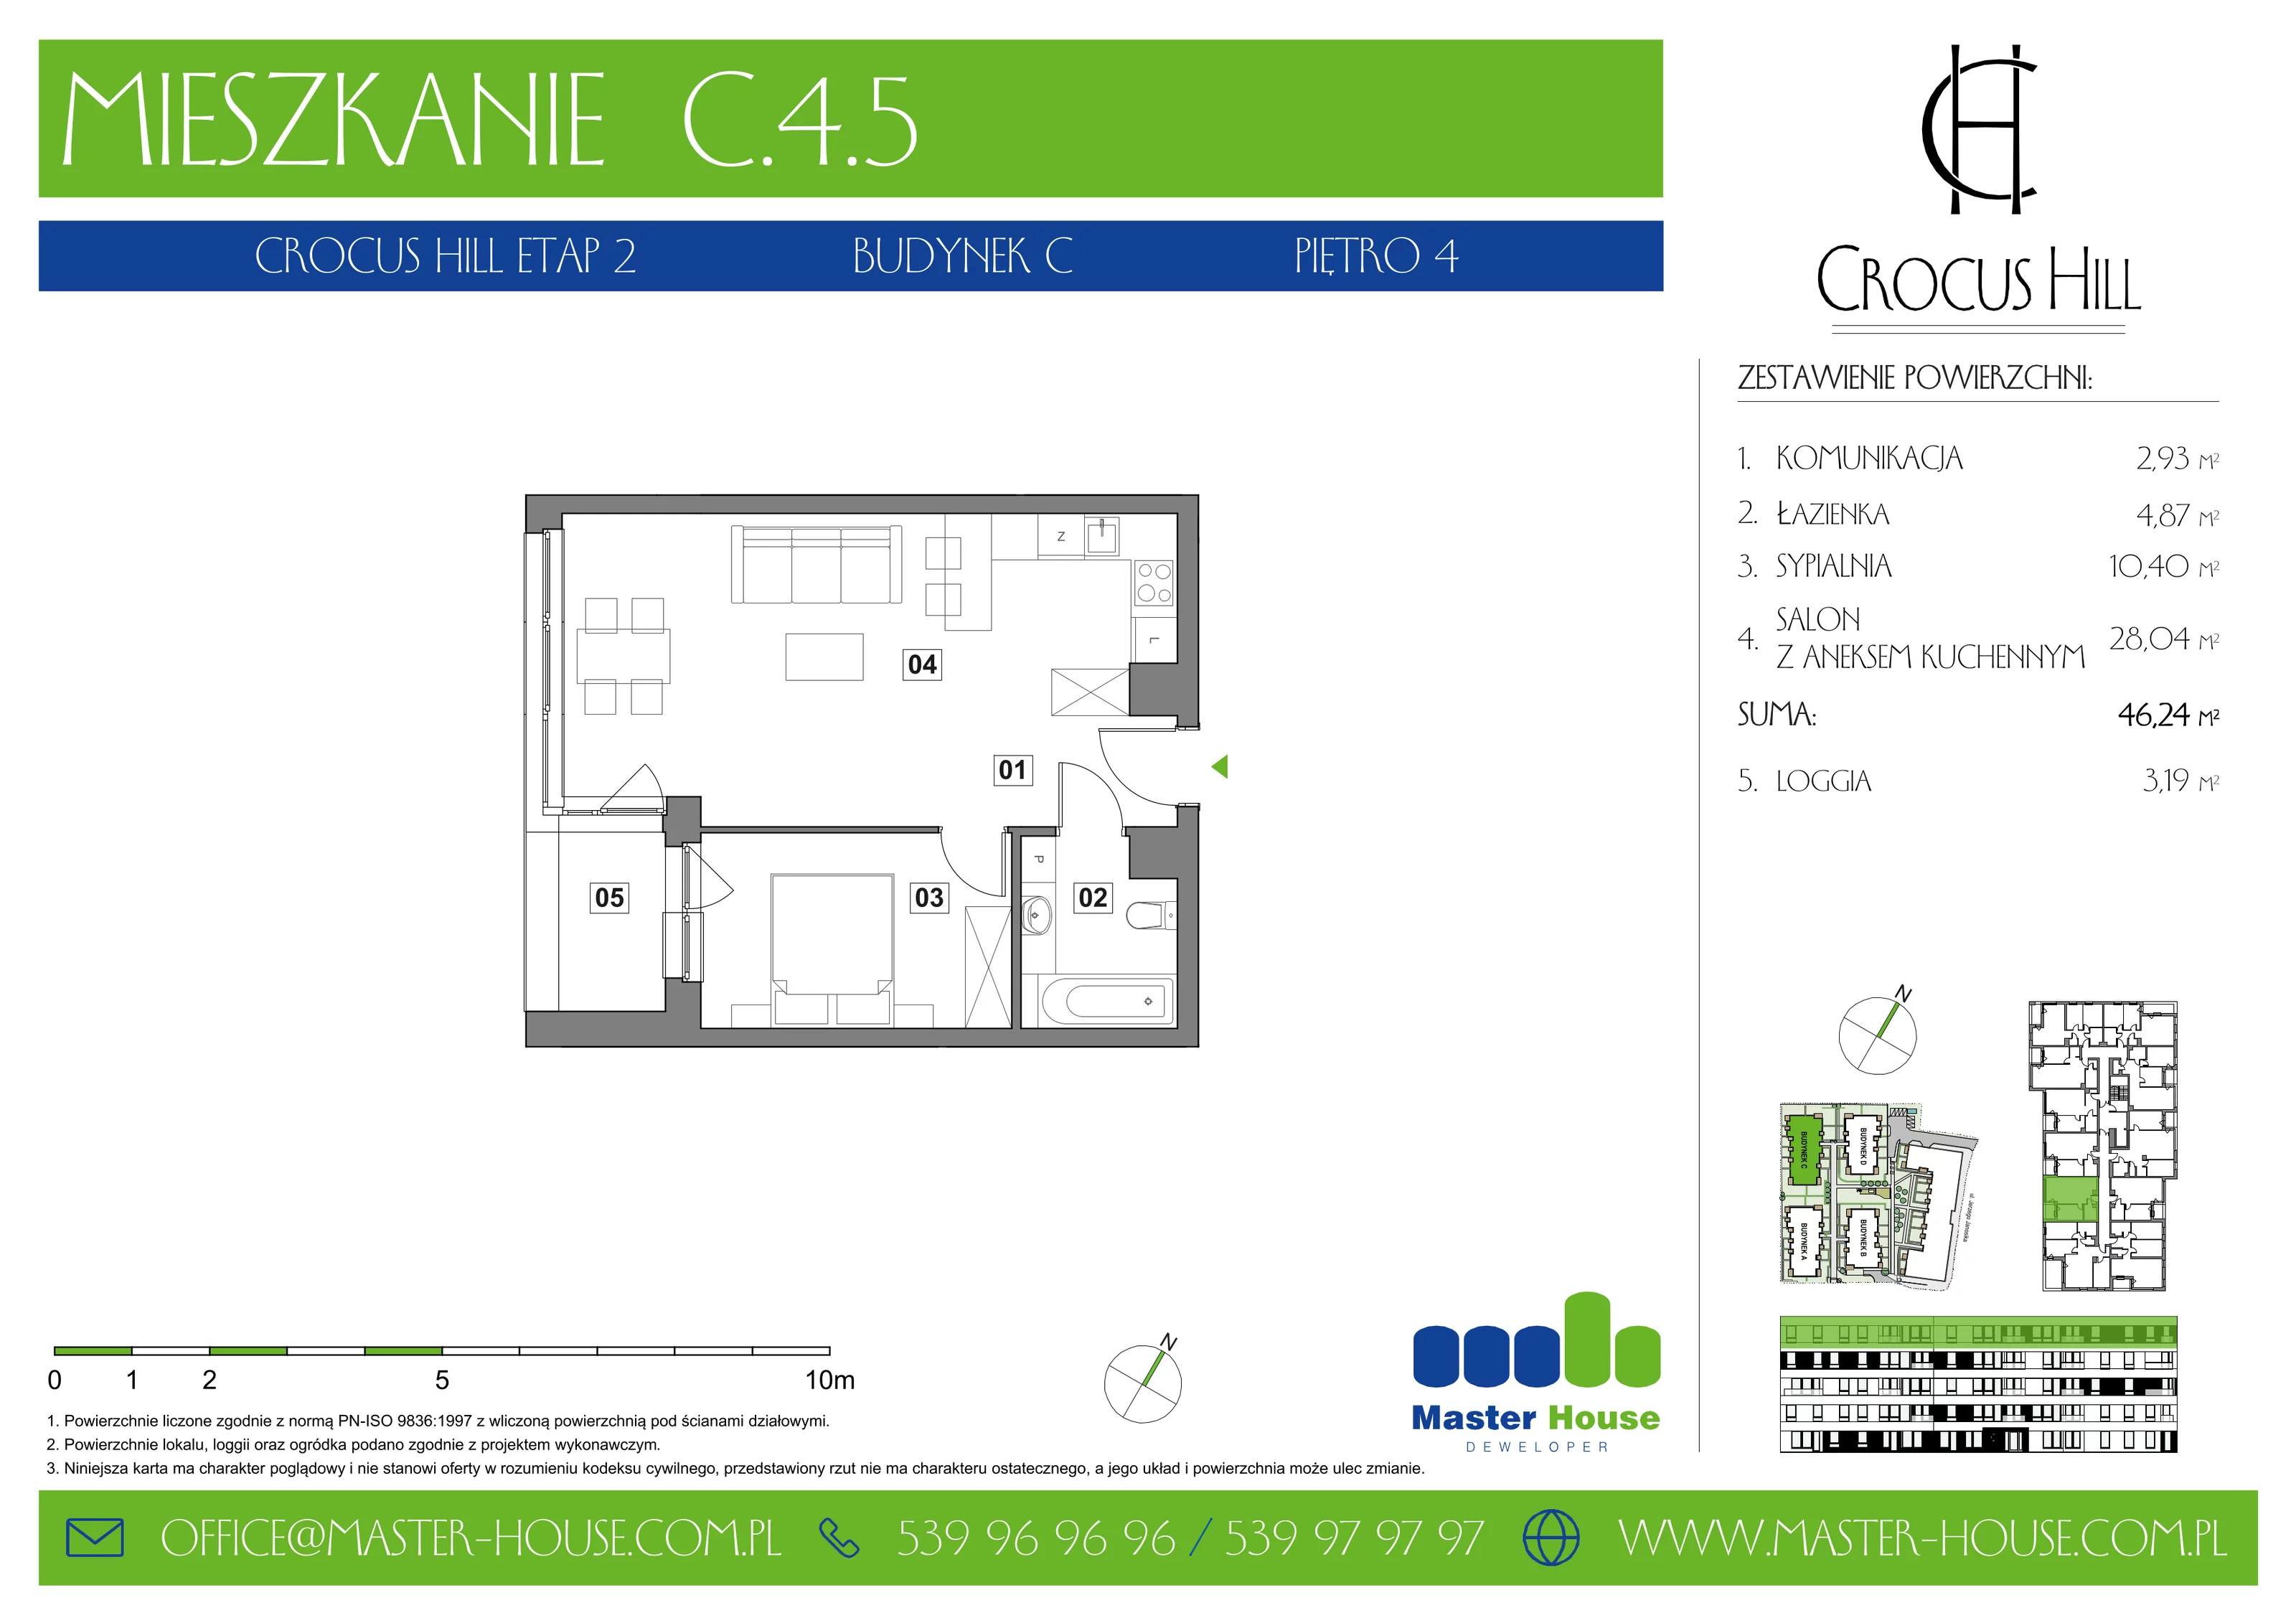 Mieszkanie 46,24 m², piętro 4, oferta nr C.4.5, Crocus Hill, Szczecin, Śródmieście, ul. Jerzego Janosika 2, 2A, 3, 3A